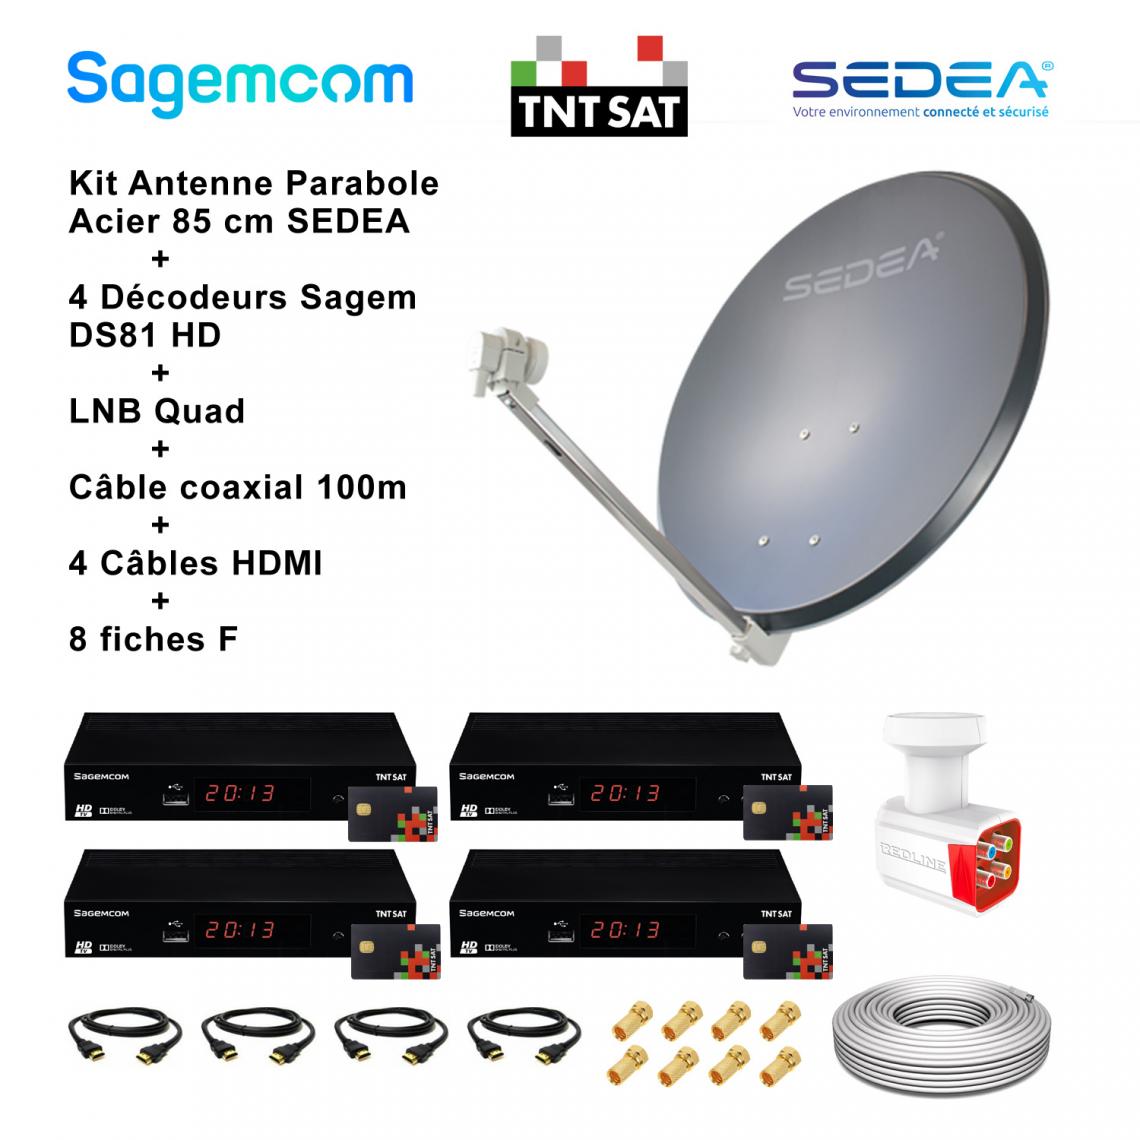 Sedea - Kit Antenne Parabole Acier 85 cm 38,2 dB Anthracite SEDEA + LNB Quad 0,1 dB Full HD 4K Ultra HD + 4 Décodeurs Sagem DS81 HD TNTSAT + Câble coaxial 100m + 4 Câbles HDMI + 8 Fiches F - Antennes intérieures